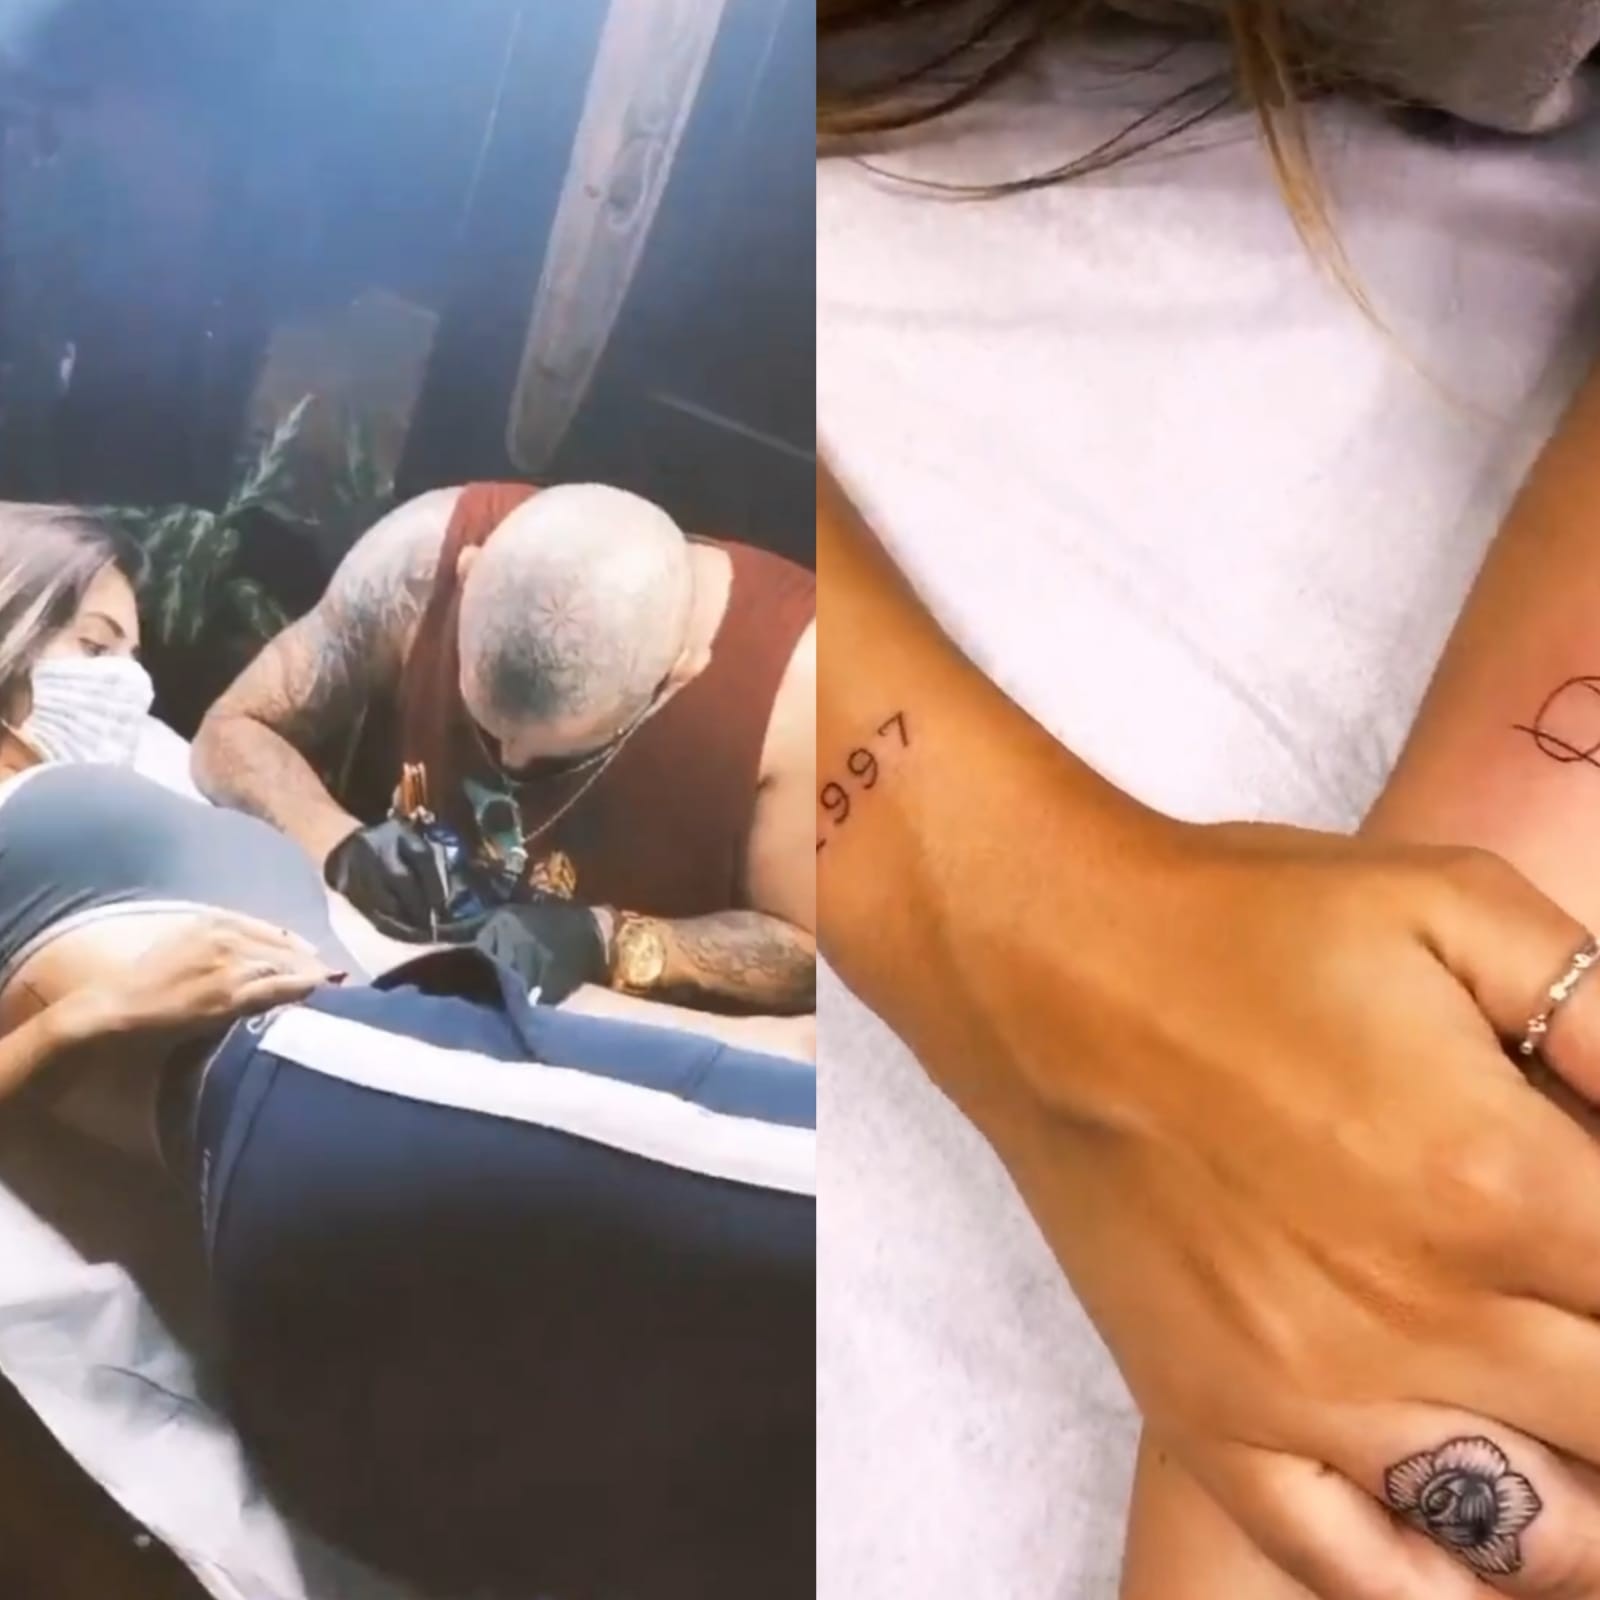 Isabella Arantes faz novas tatuagens (Foto: Reprodução)